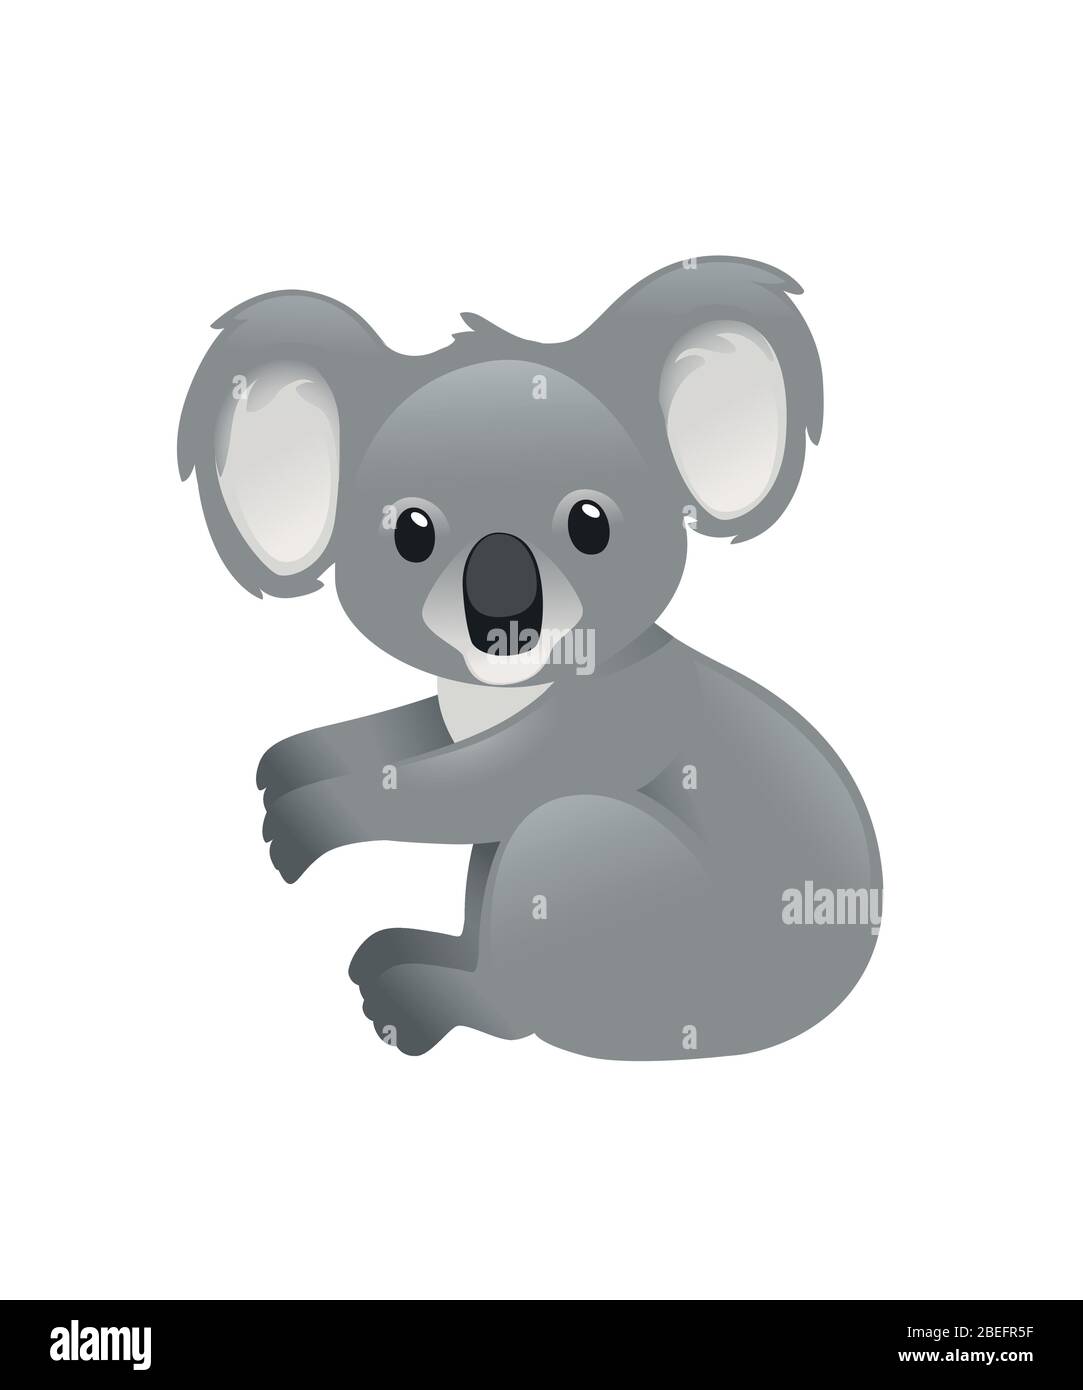 Niedlichen grauen Koala Bär sitzen auf dem Boden und schauen Sie Cartoon Tier Design flache Vektor-Illustration auf weißem Hintergrund isoliert Stock Vektor